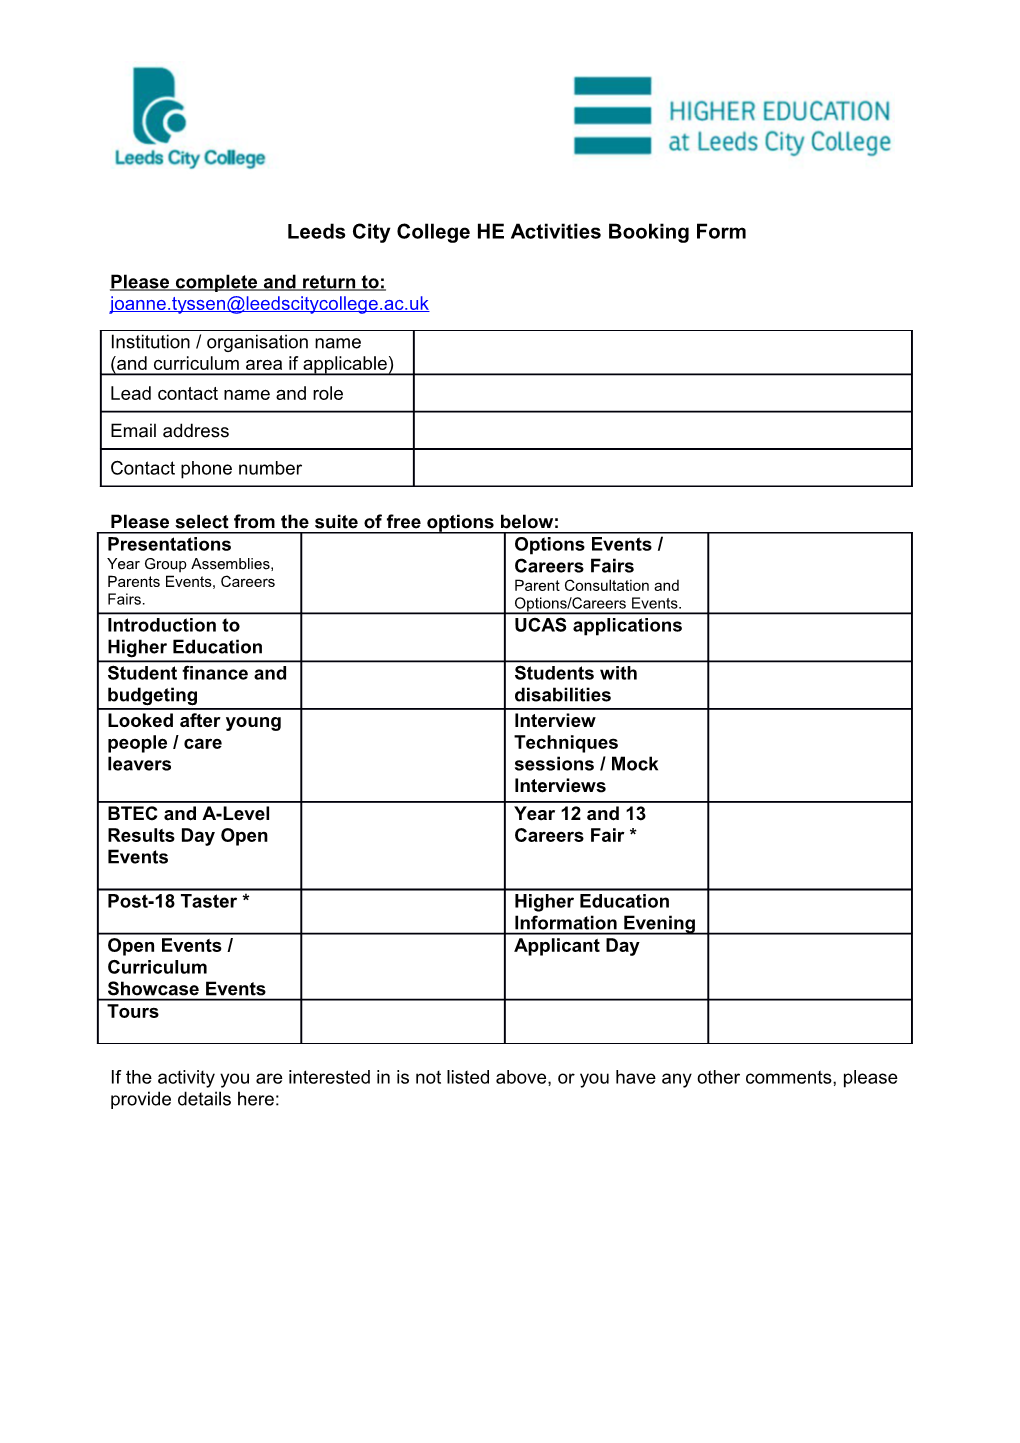 Leeds City College HE Activitiesbooking Form